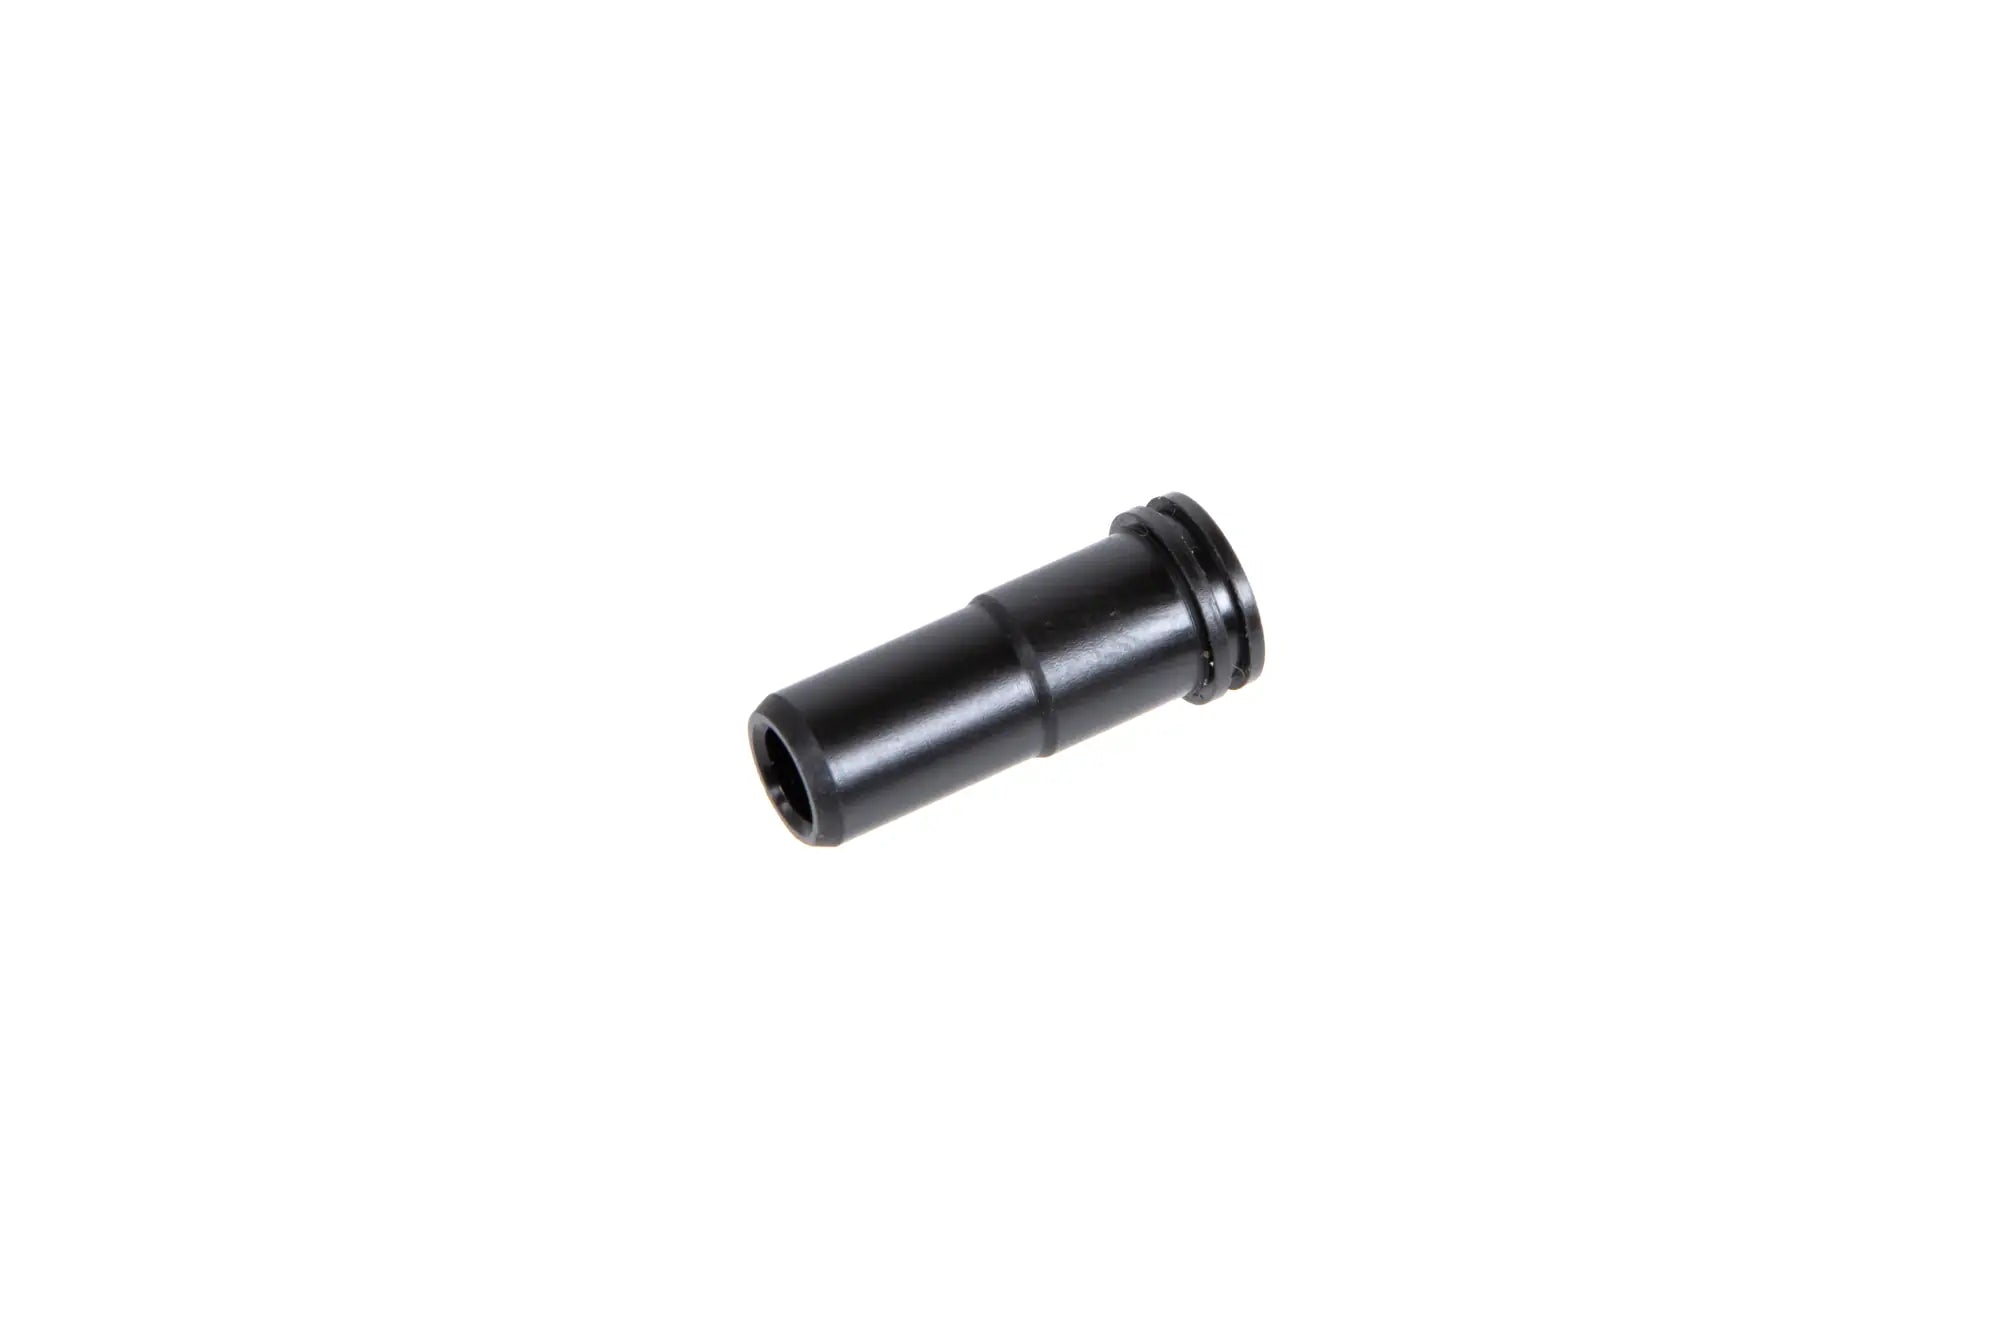 Delrin TopMax nozzle for M4 21.15mm replicas